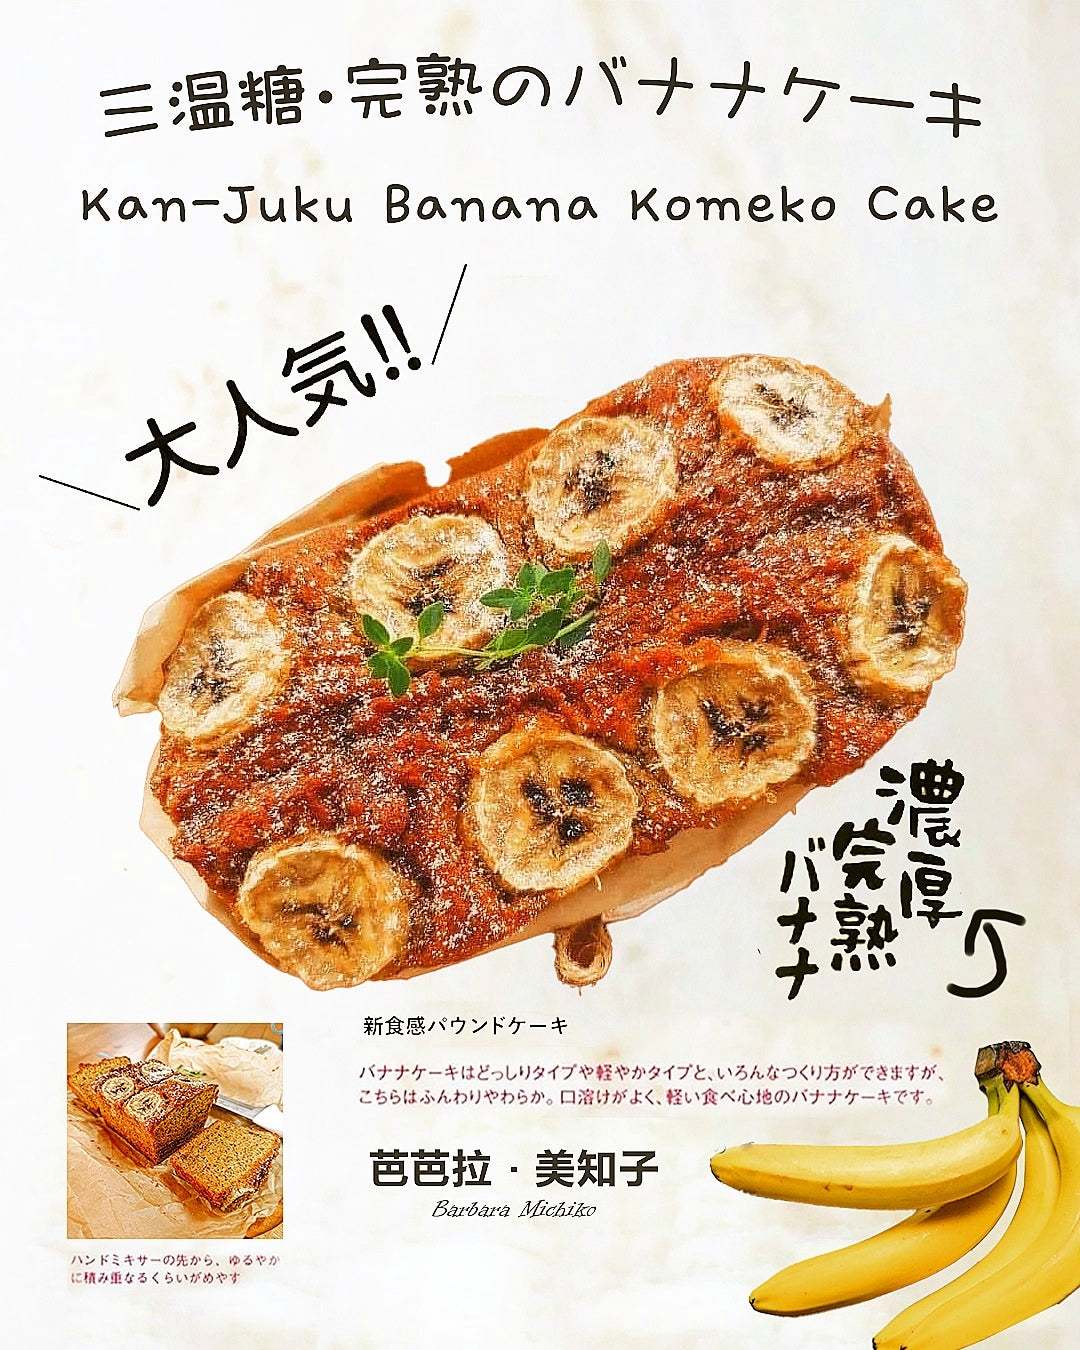 Kan-Juku Banana Komeko Cake Baking (private) Workshop 三温糖完熟の香蕉•米蛋糕课程